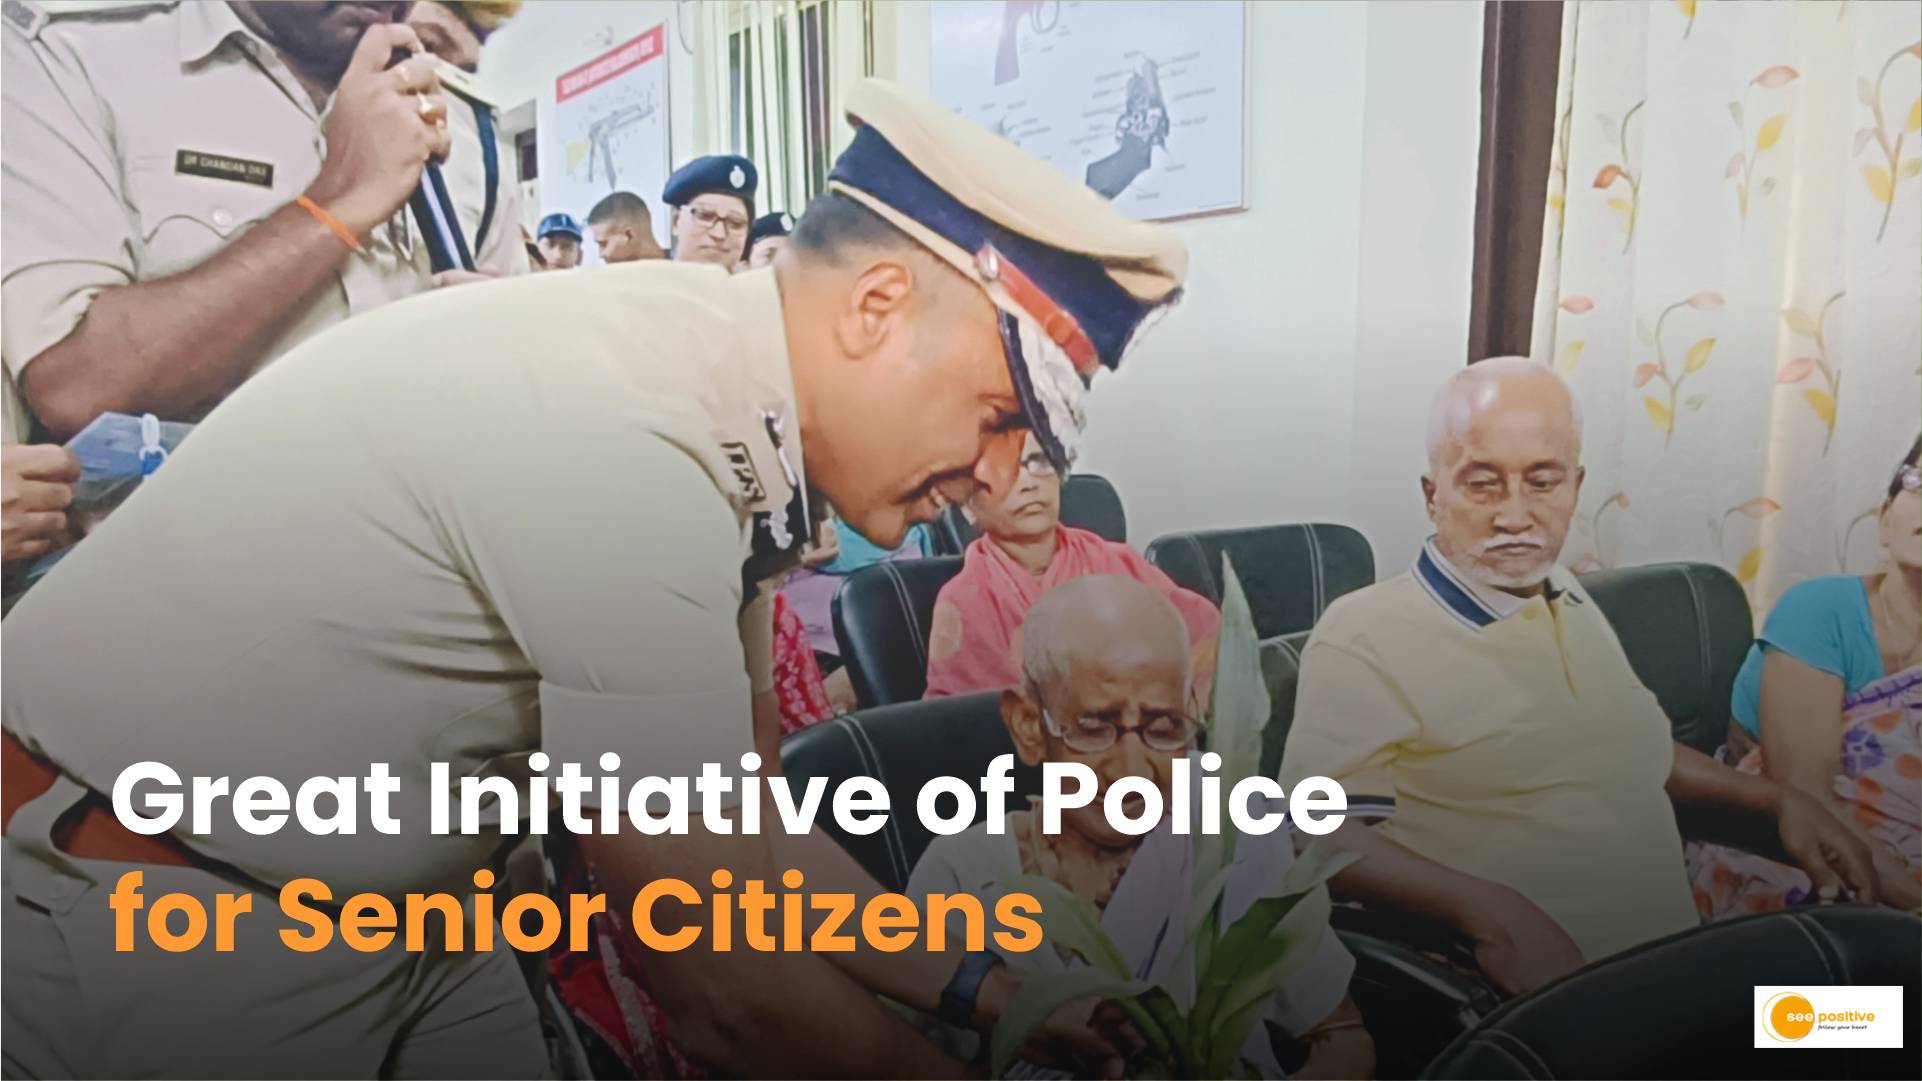 Initiative for Senior Citizens